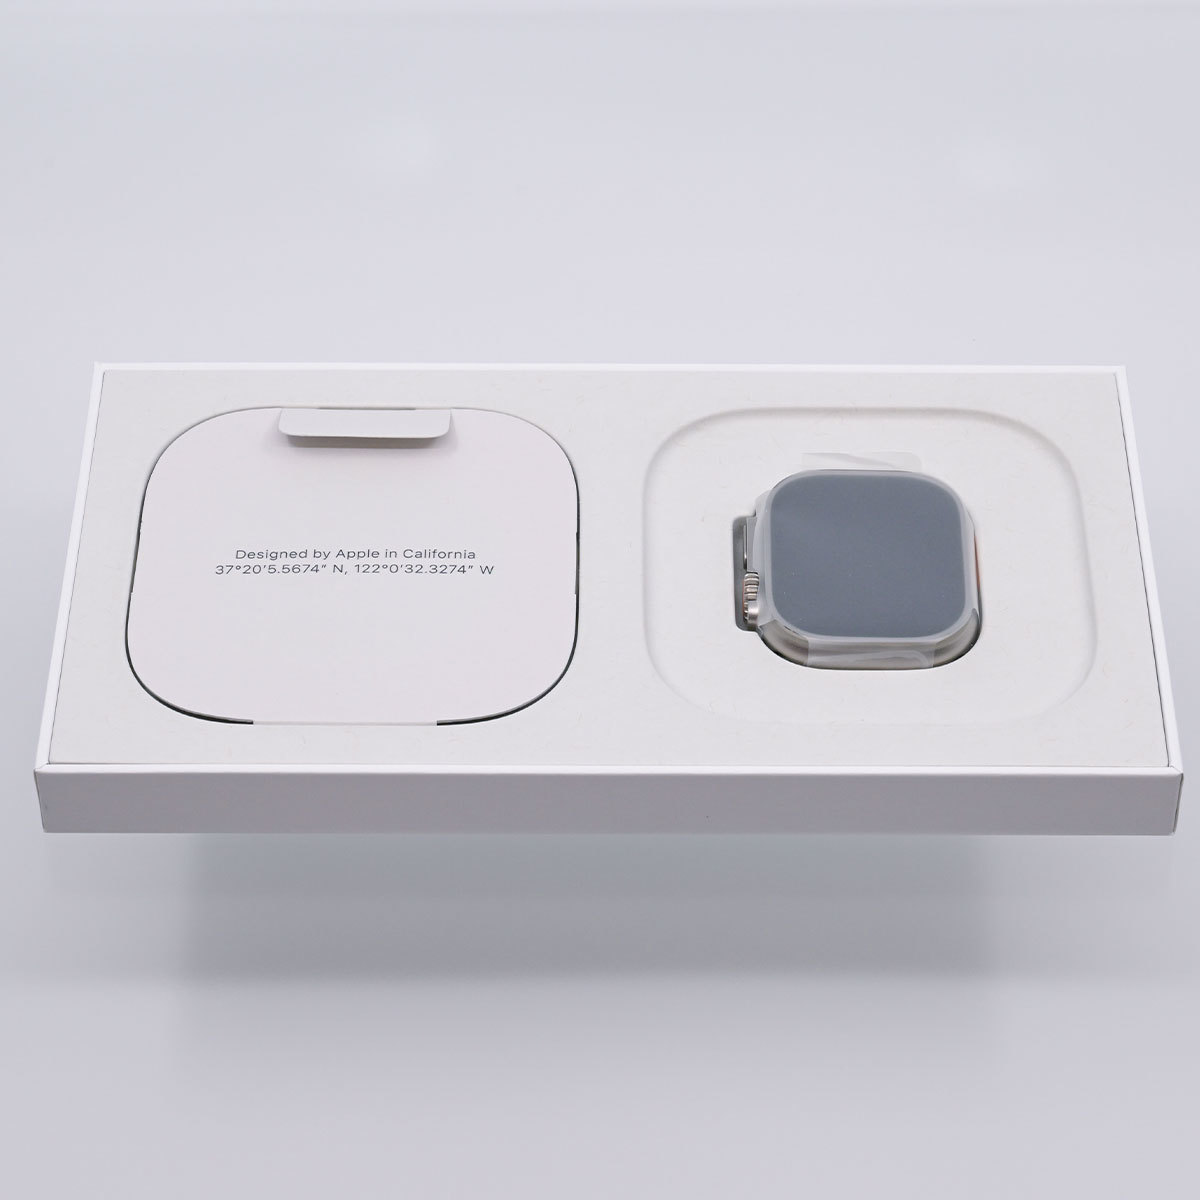 【最落なし!!】Apple Watch Ultra チタニウム 49mm 新品!!の画像1